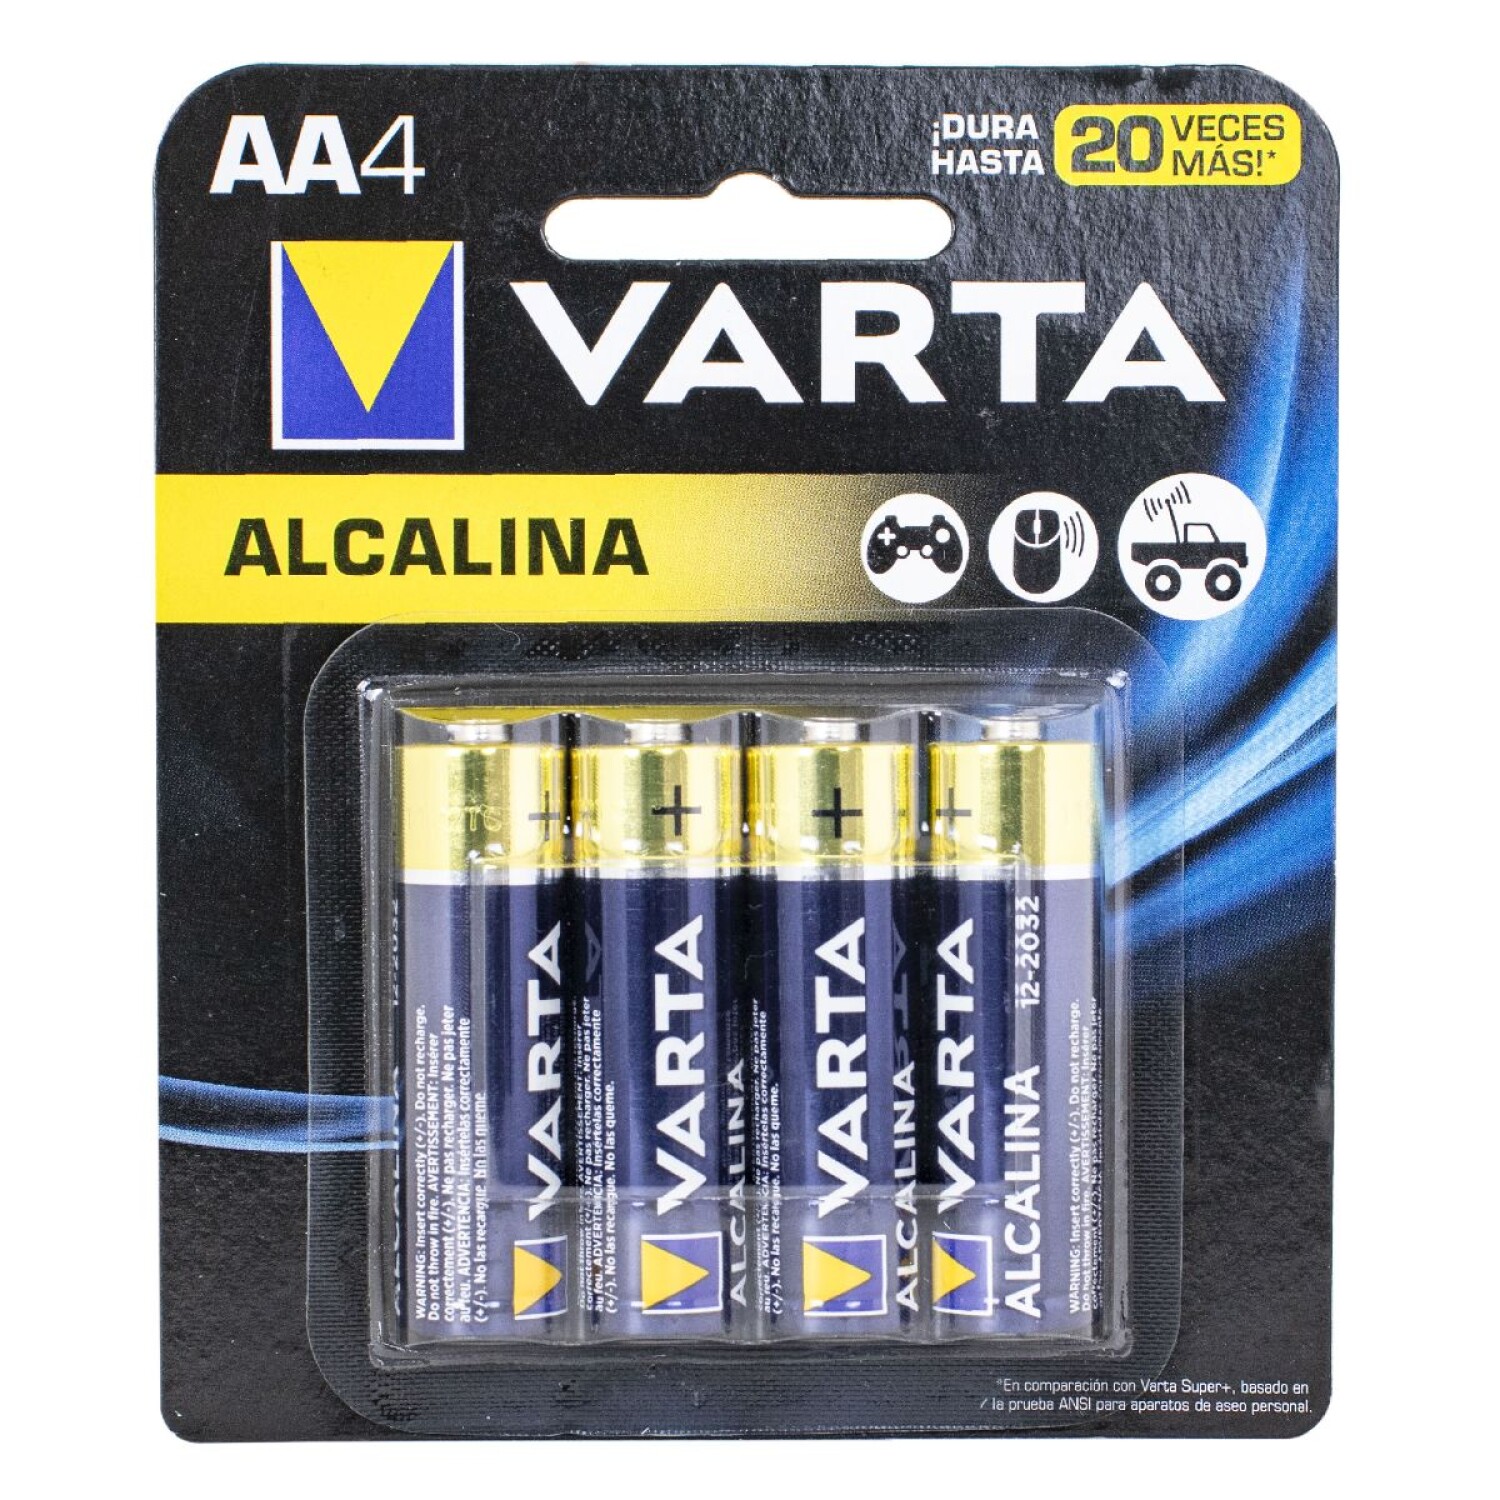 Varta Pilas micro (AAA) de litio de uso profesional, paquete de 4 unidades